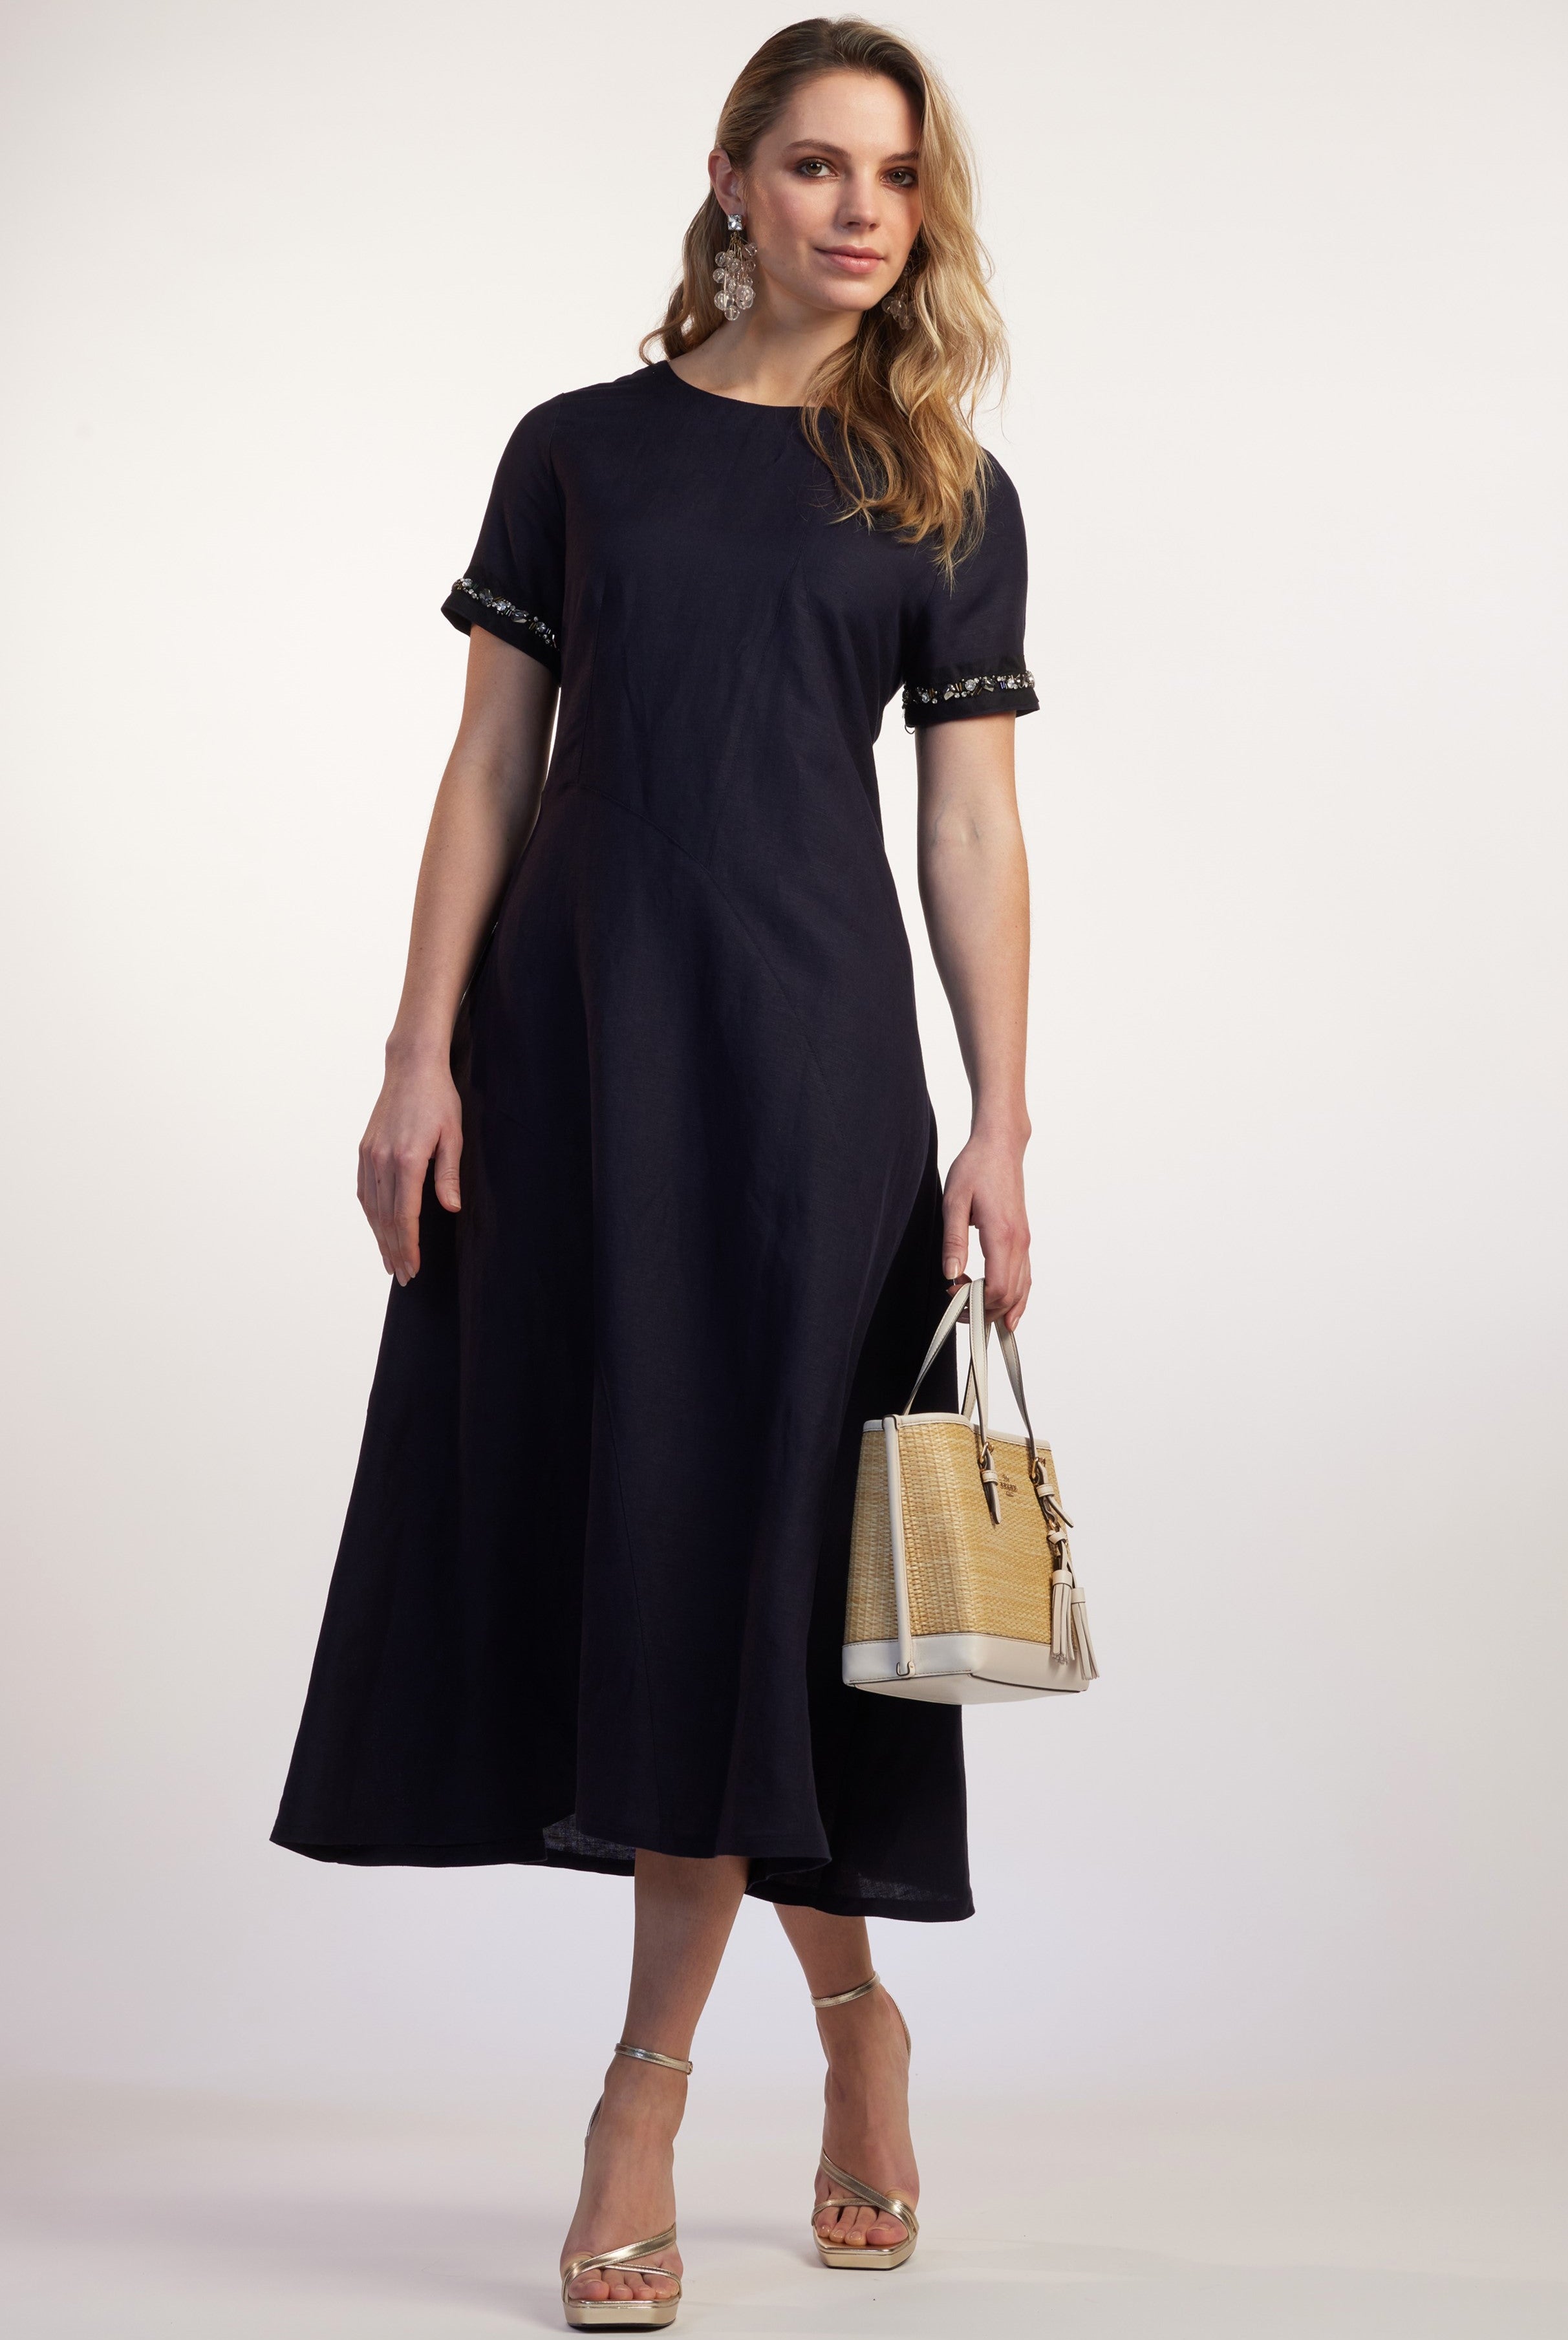 Paula Ryan STUD TRIM BONDED SHEATH Dress - Brand-Paula Ryan